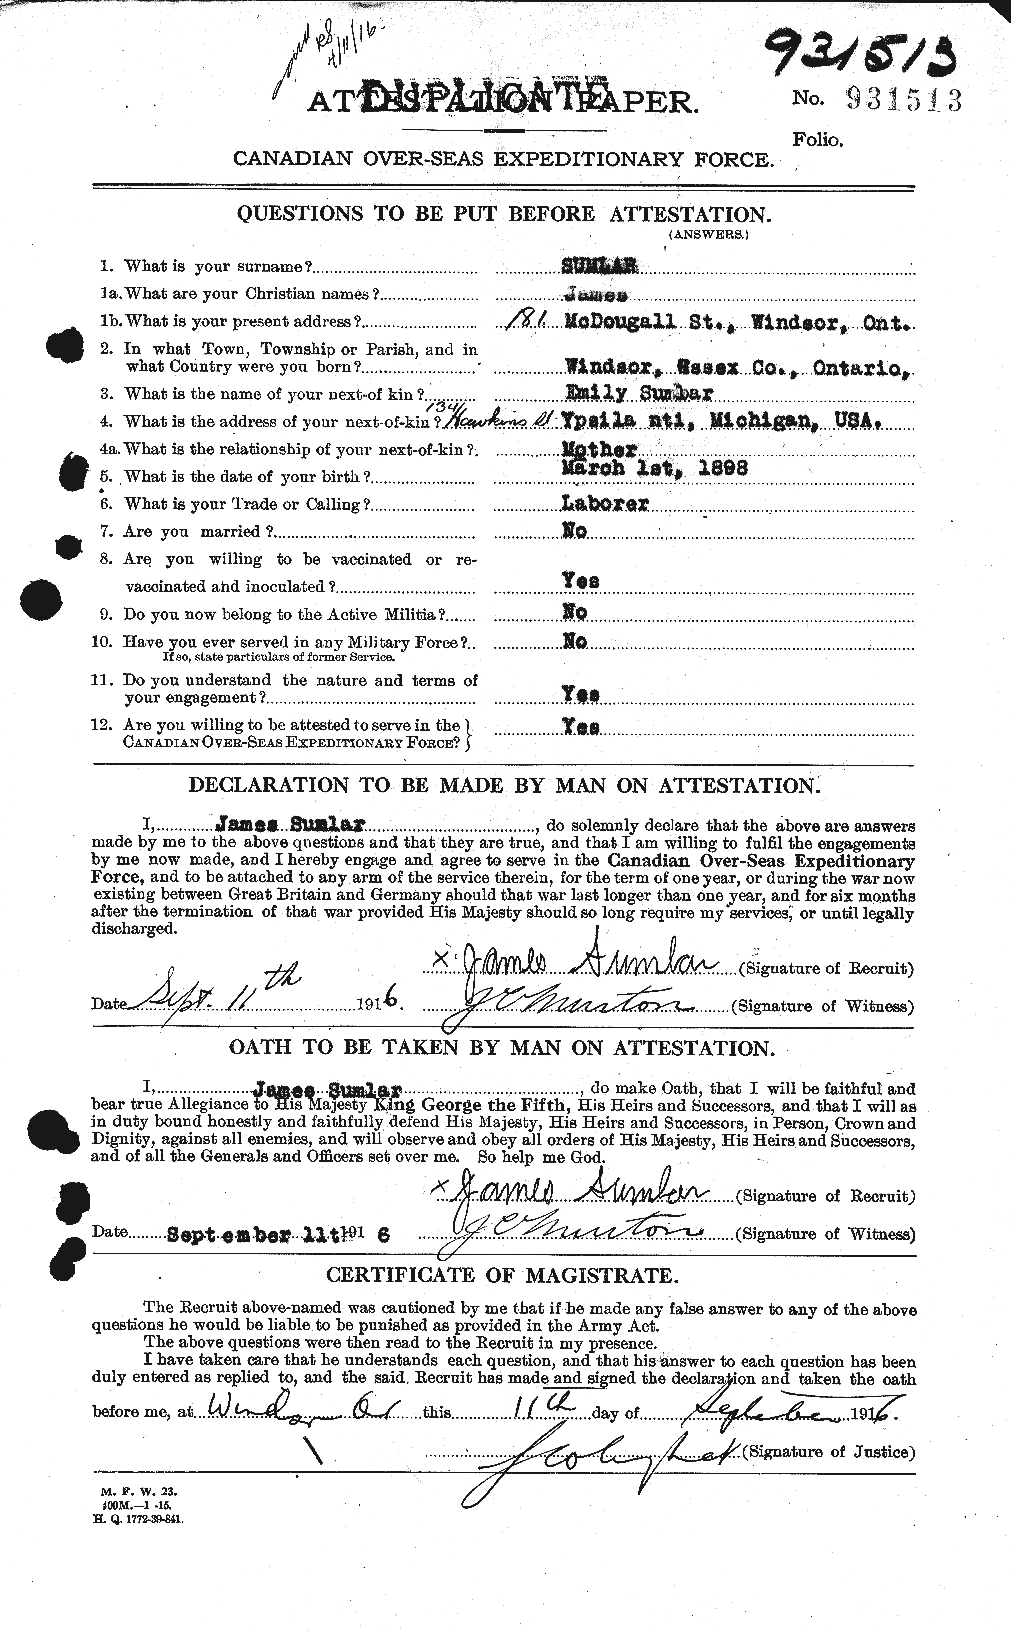 Dossiers du Personnel de la Première Guerre mondiale - CEC 124067a